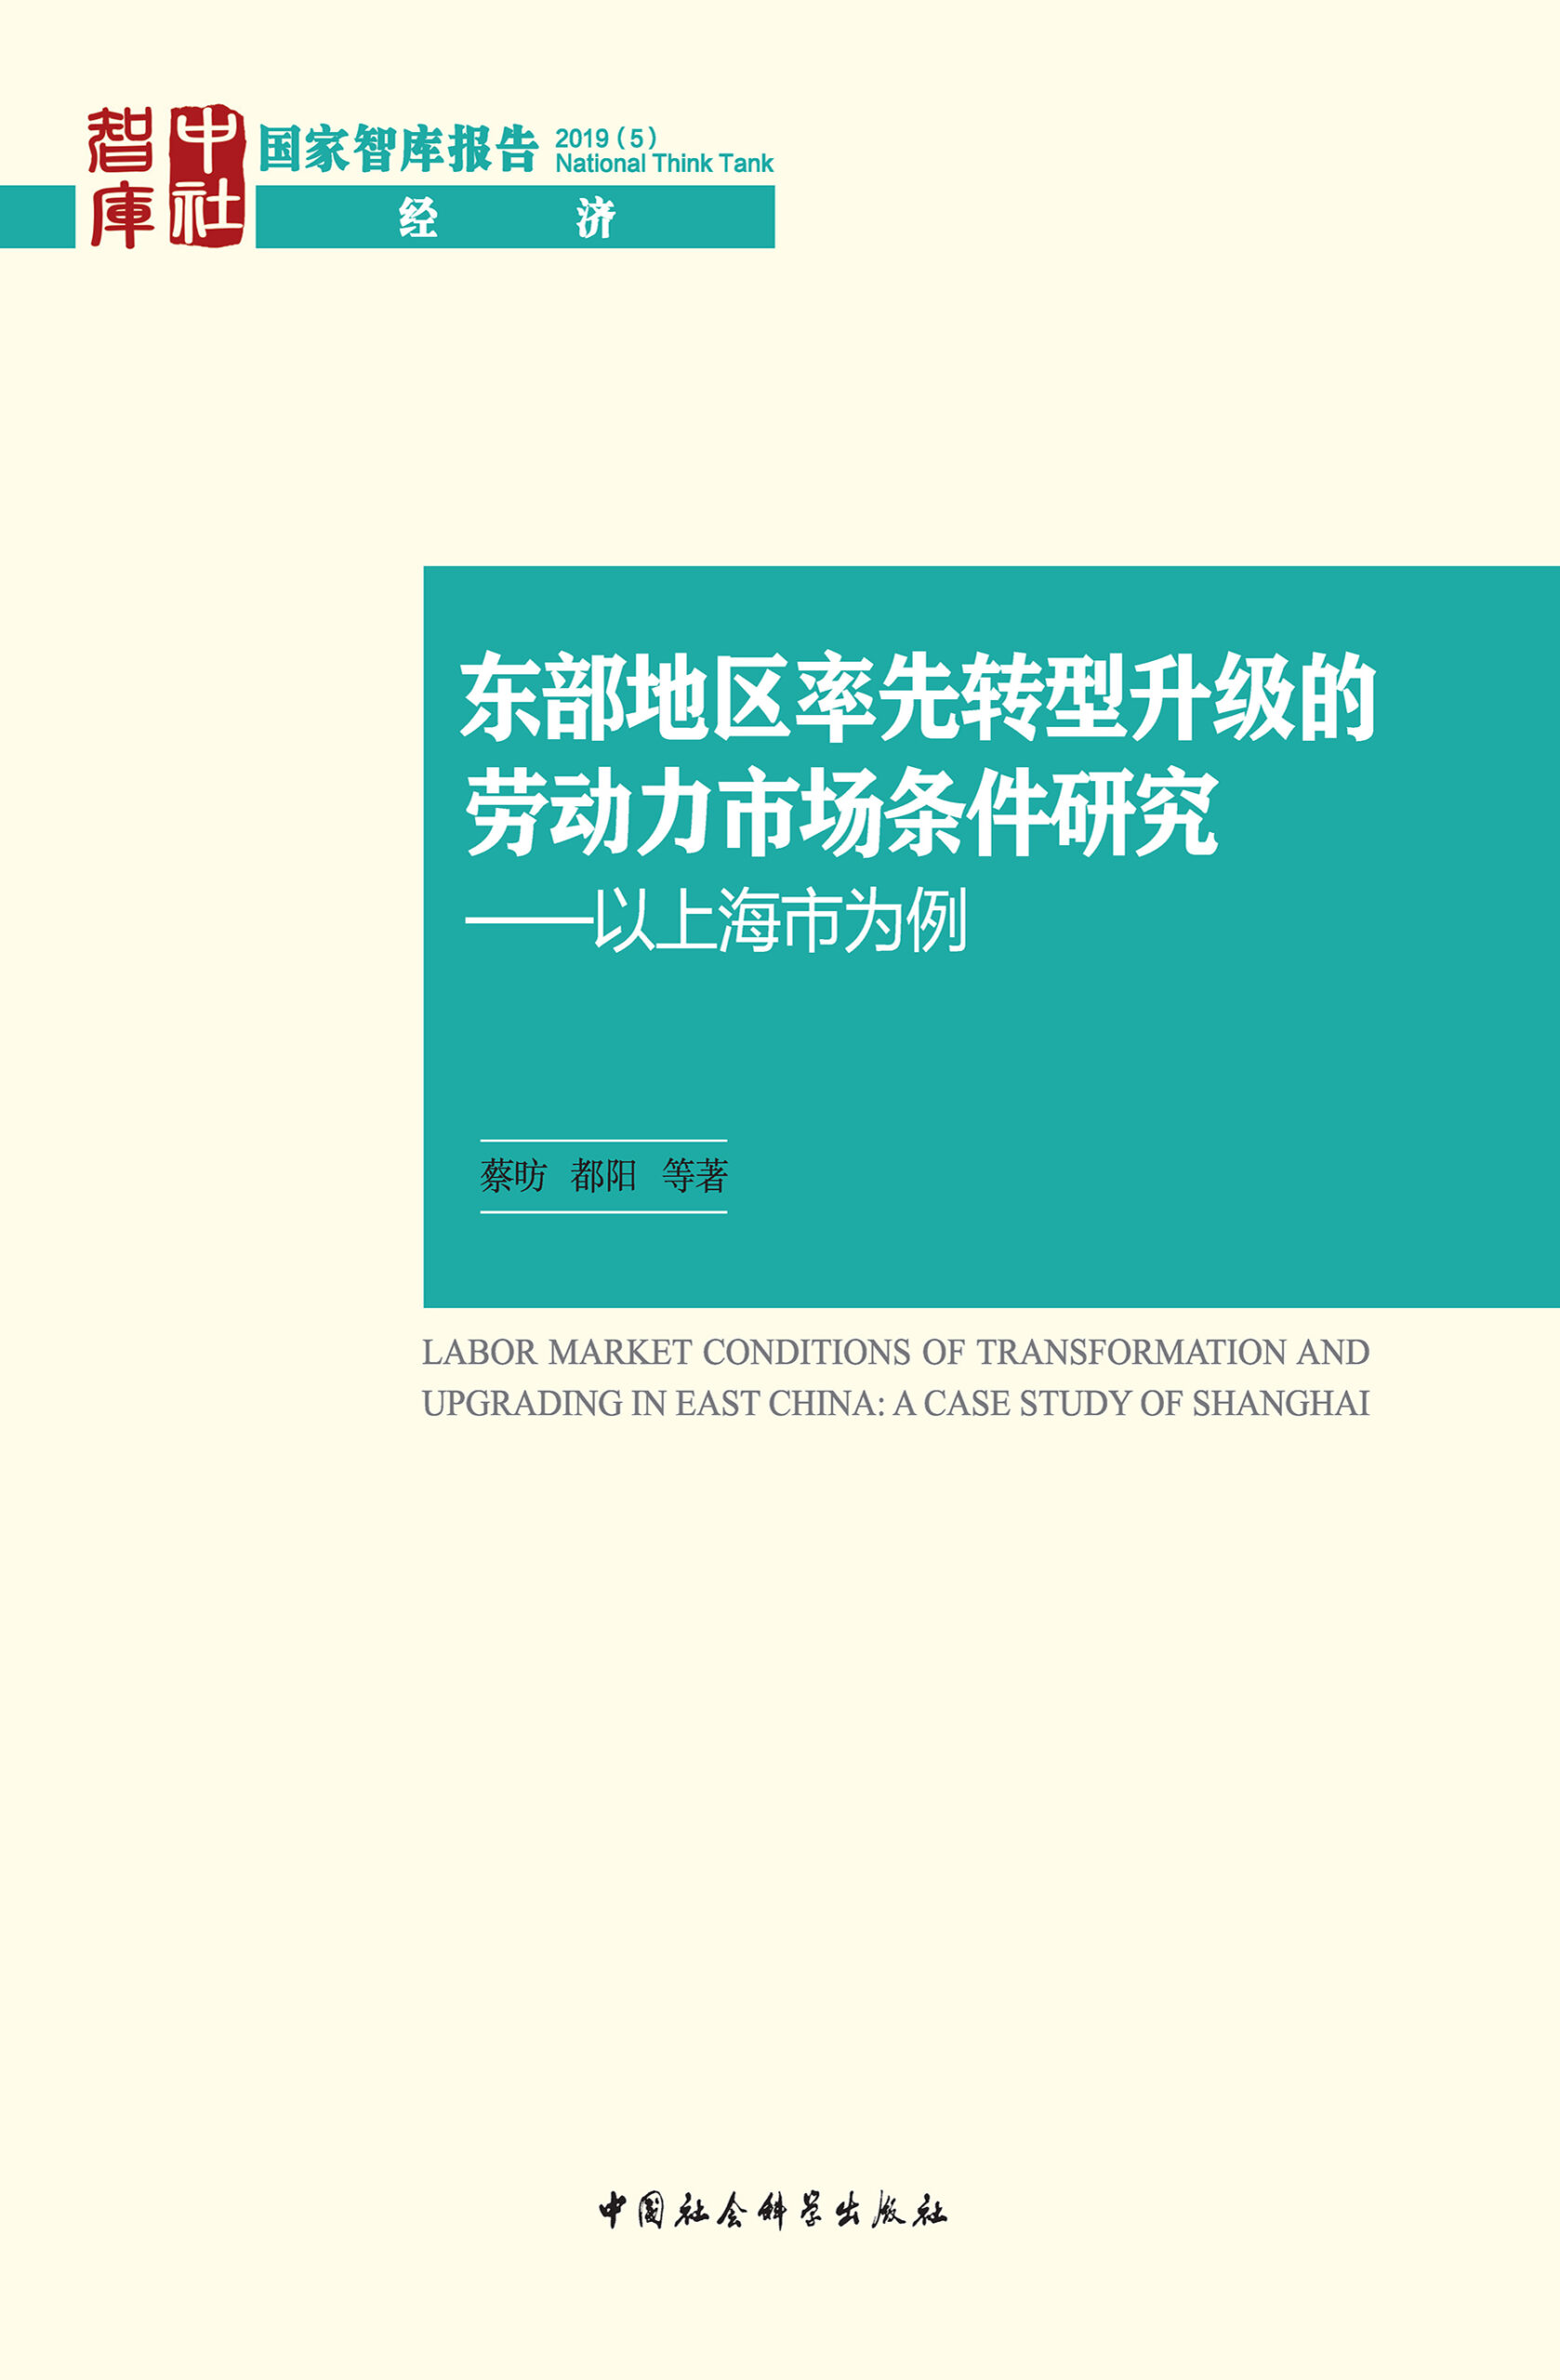 蔡昉、都阳等：东部地区率先转型升级的劳动力市场条件研究